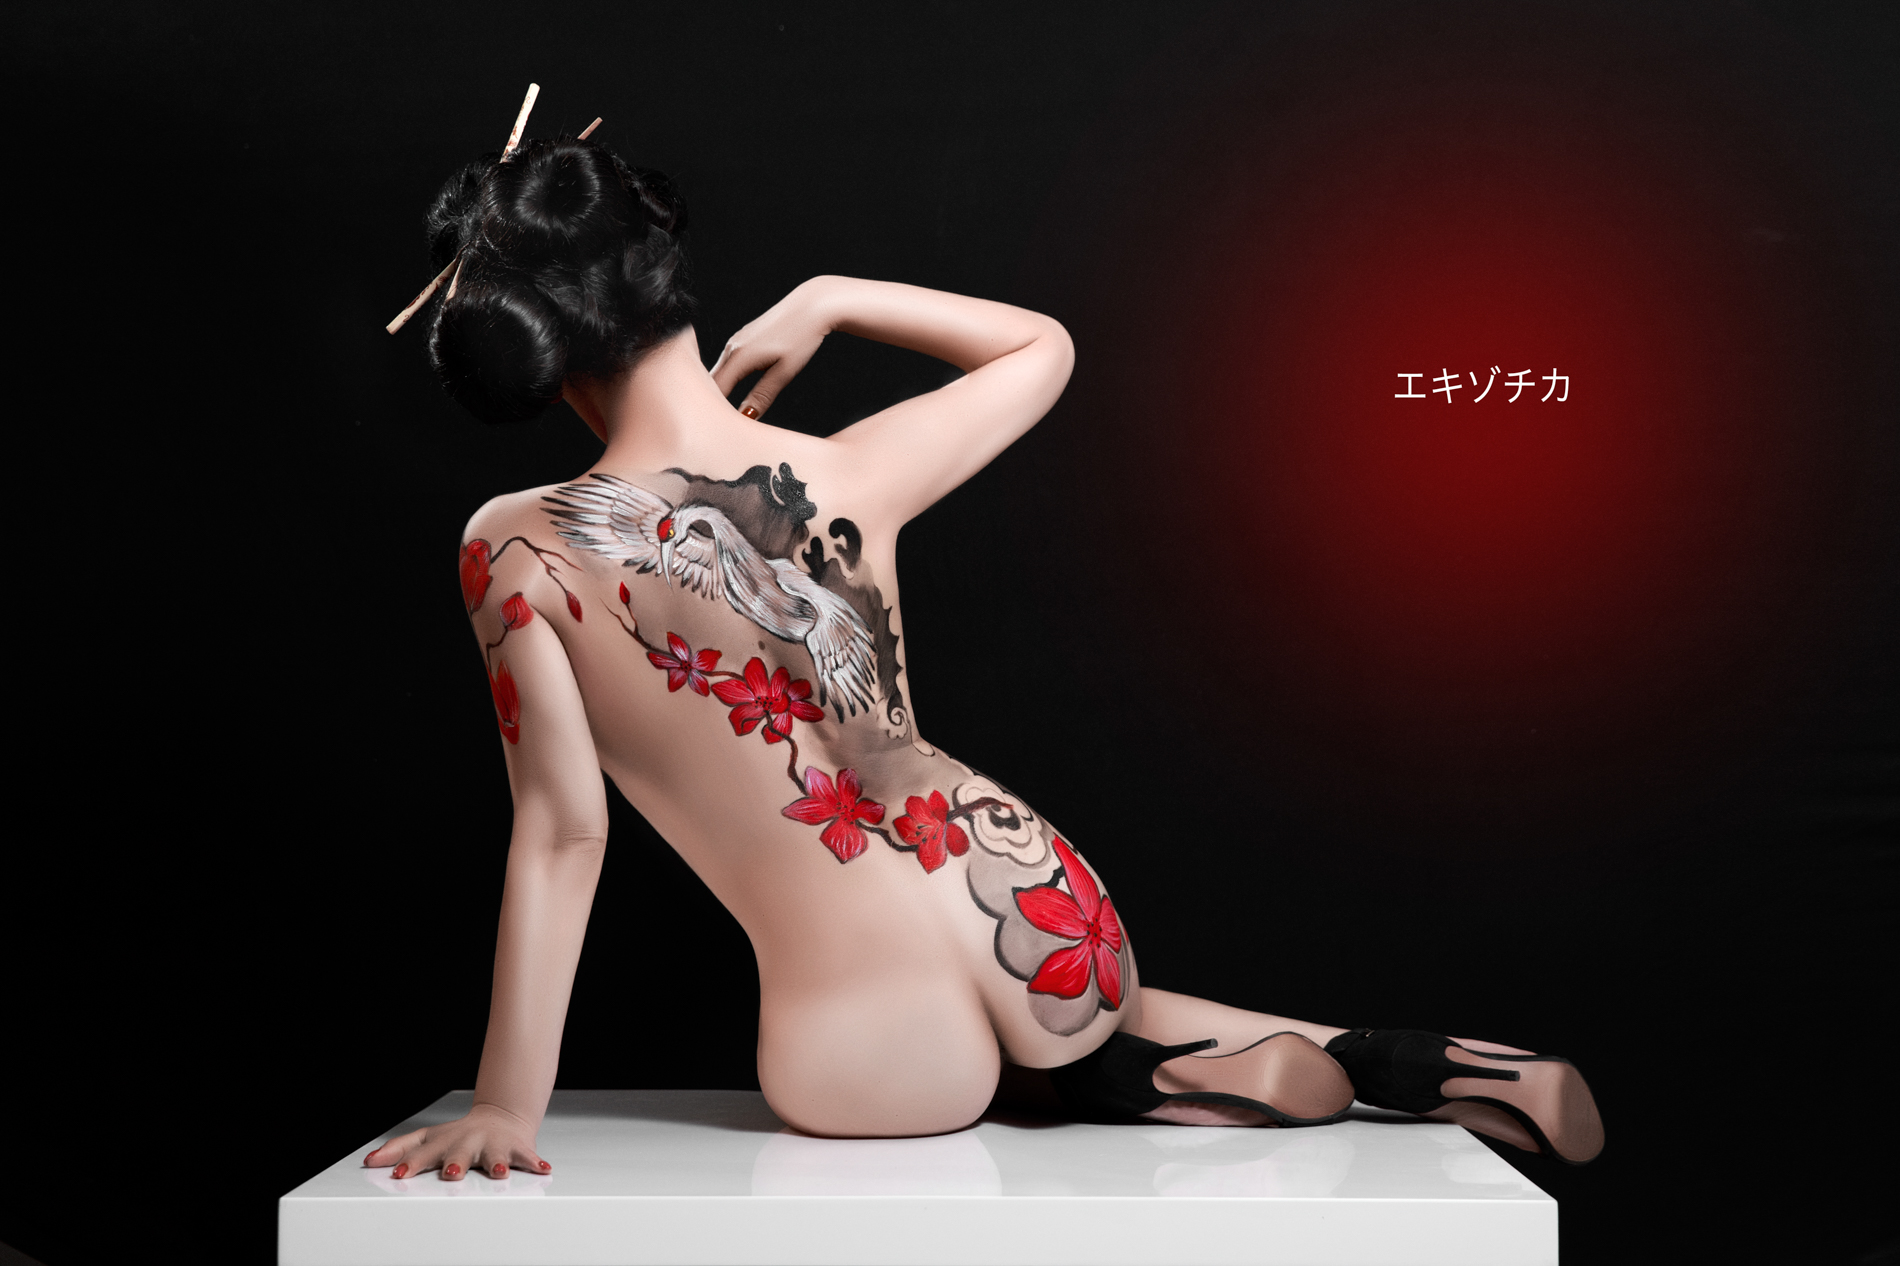 коллекция японской эротики фото 12